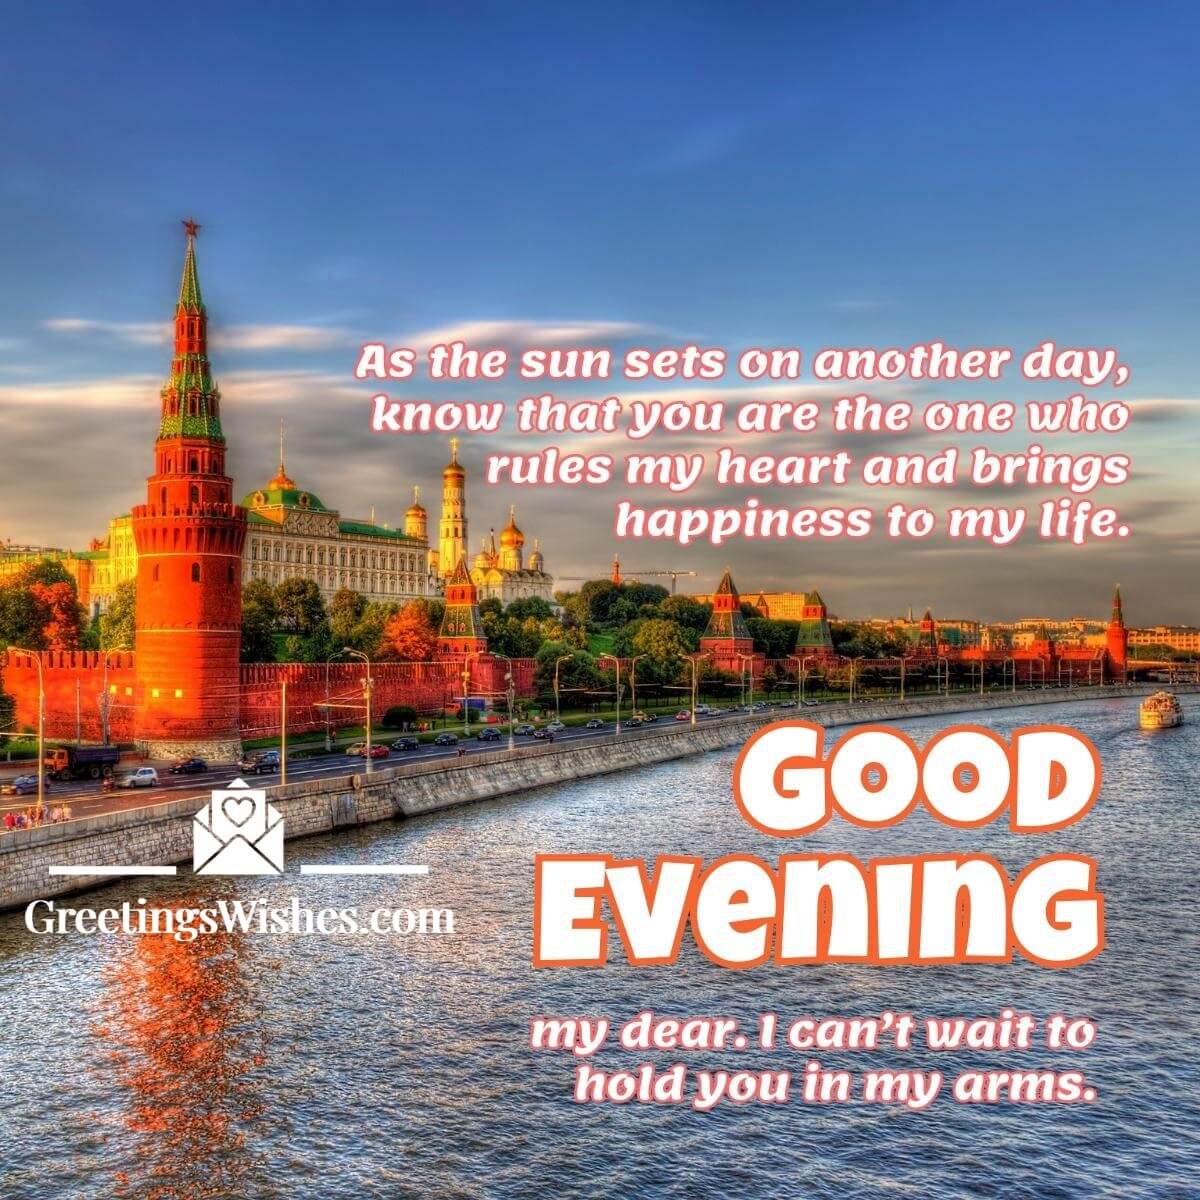 Good Evening Message My Dear